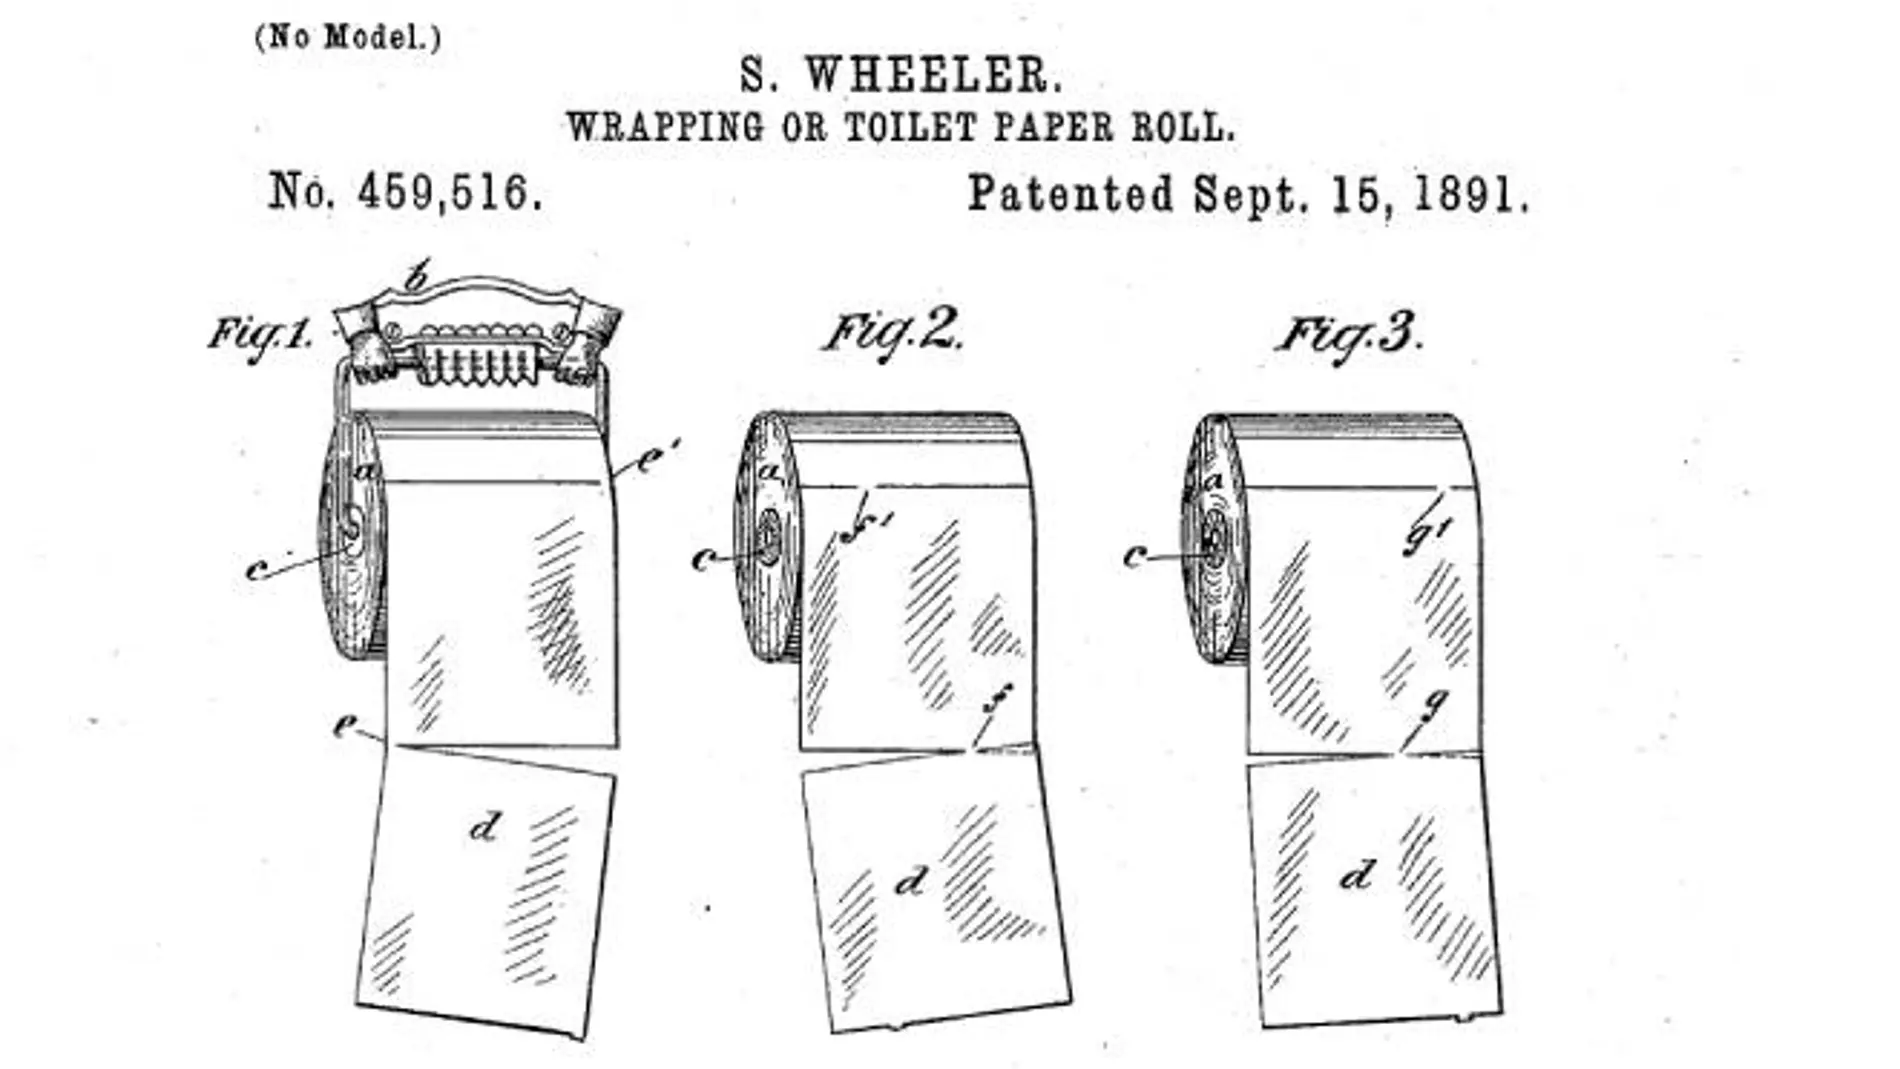 Esta es la forma correcta de colocar el rollo de papel higiénico según la patente original de 1891.